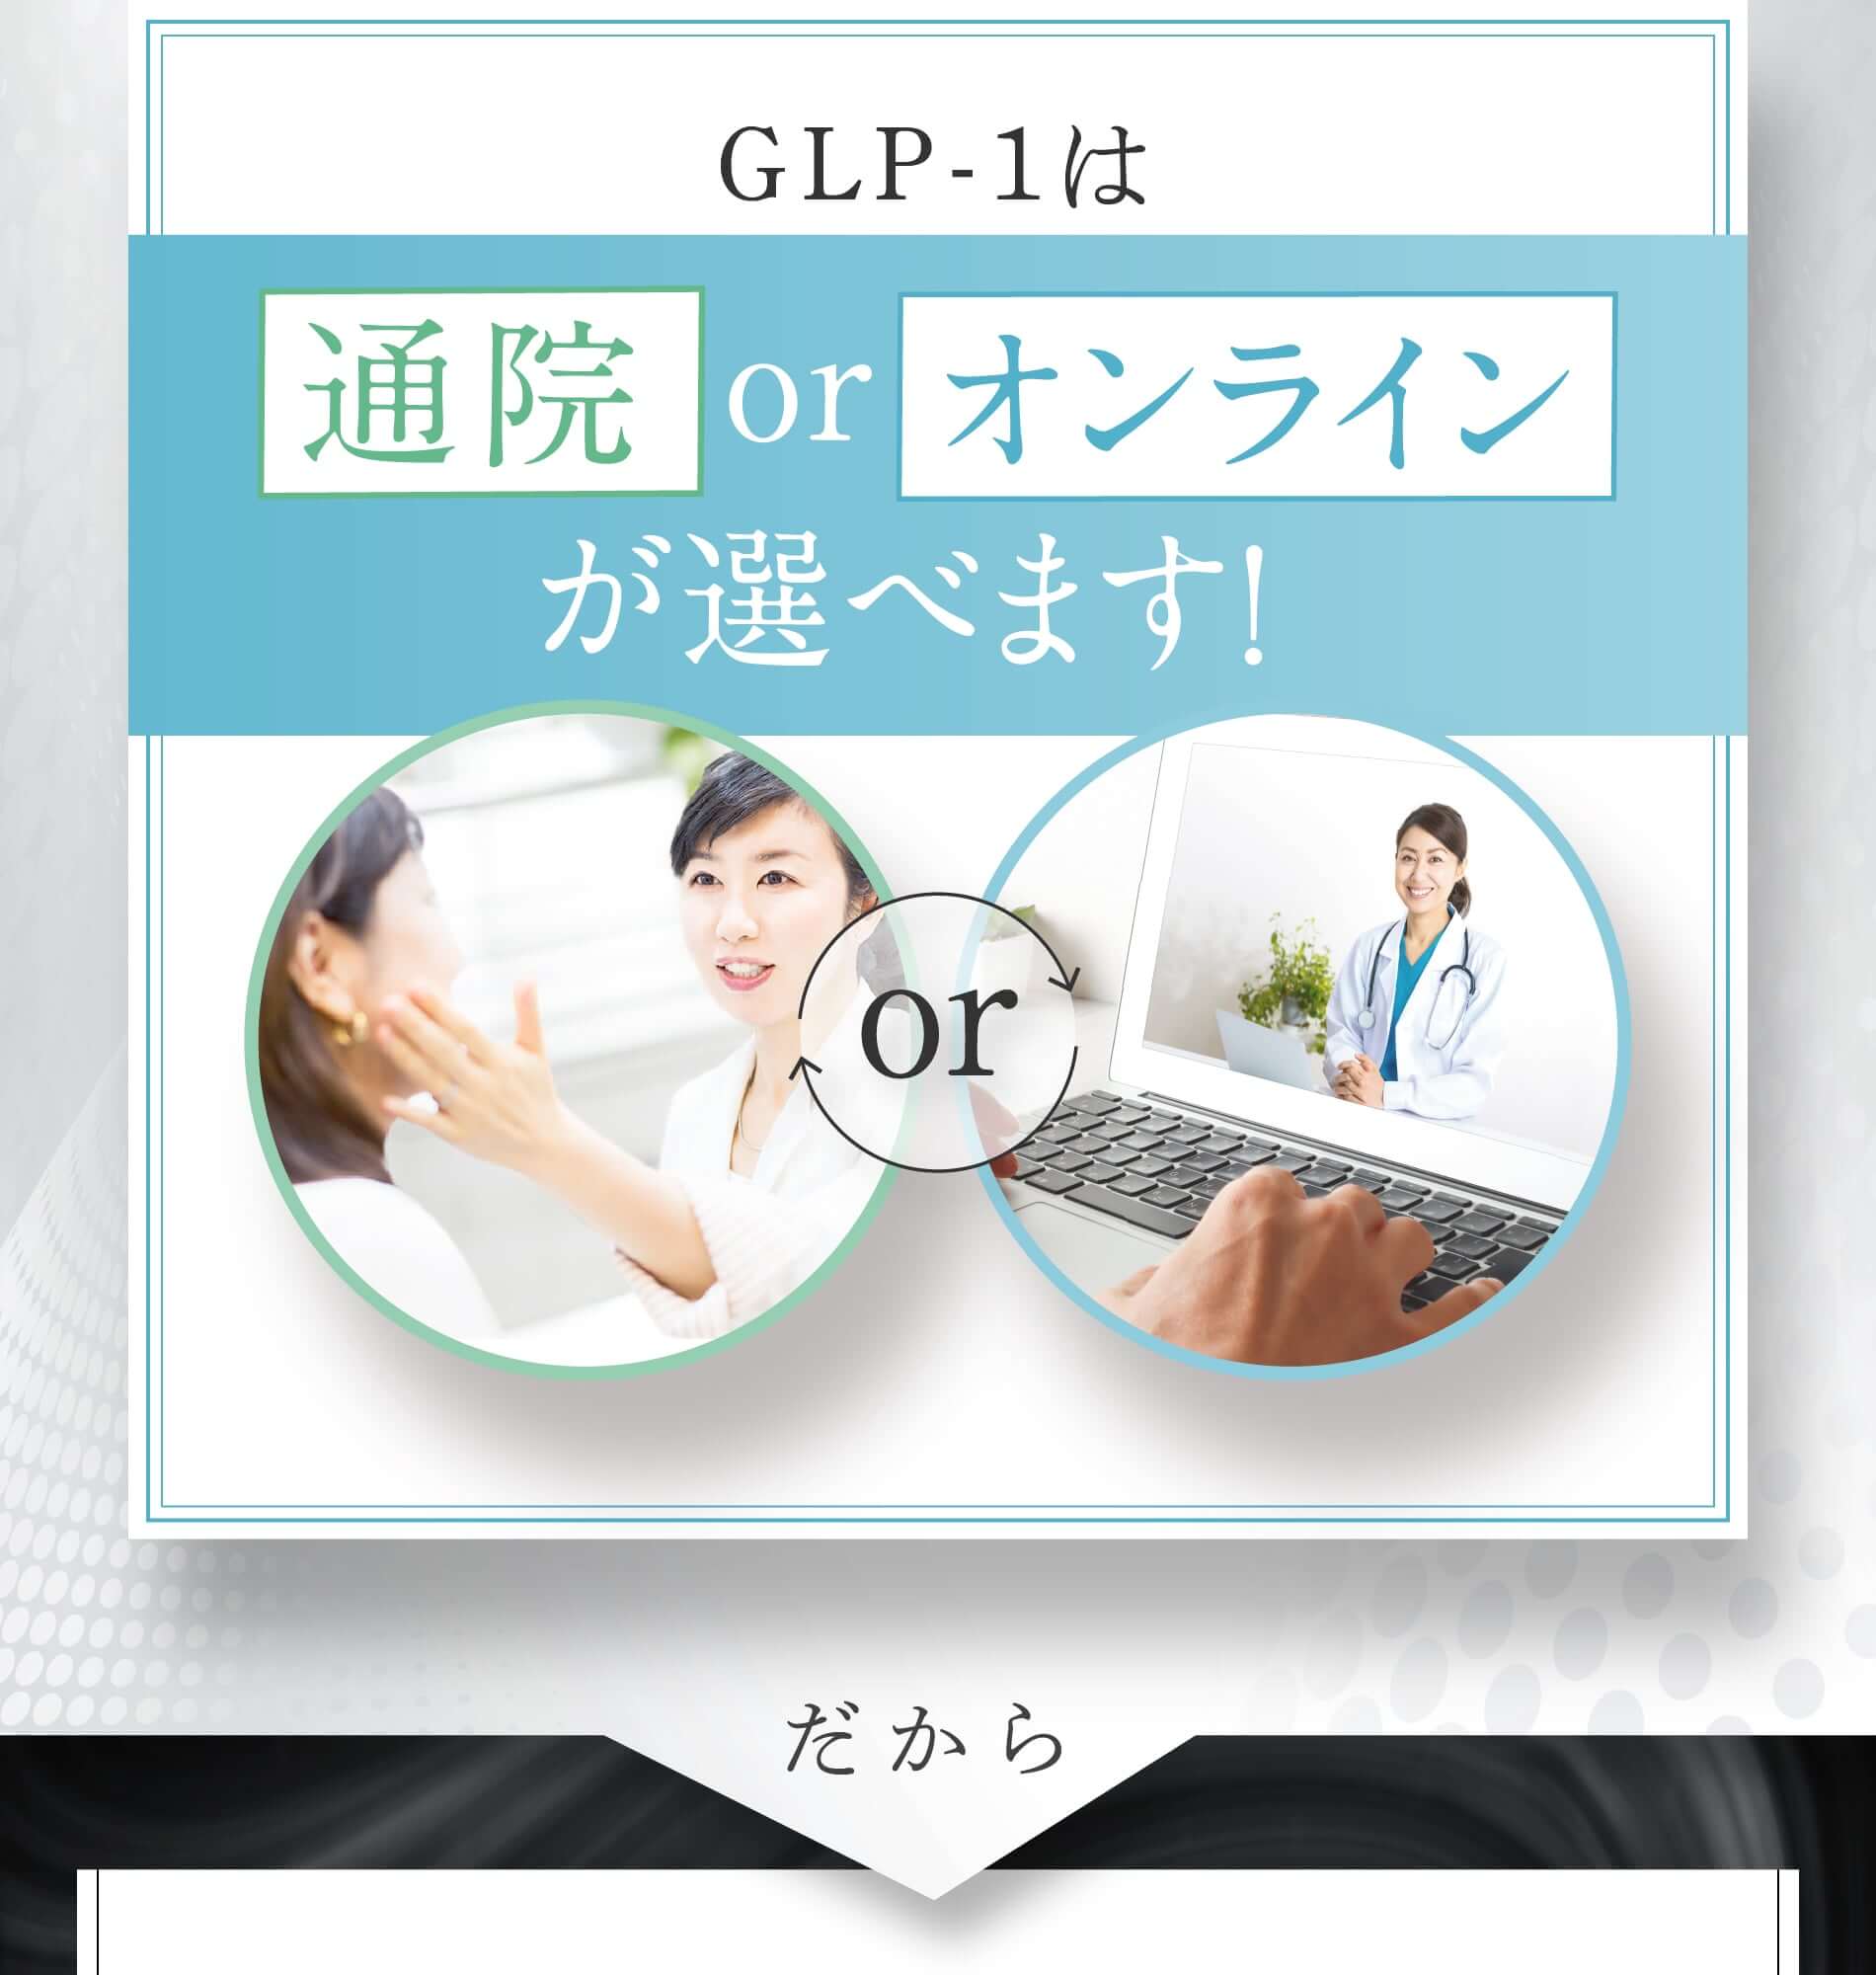 GLP-1は通院orオンラインが選べます！orだから